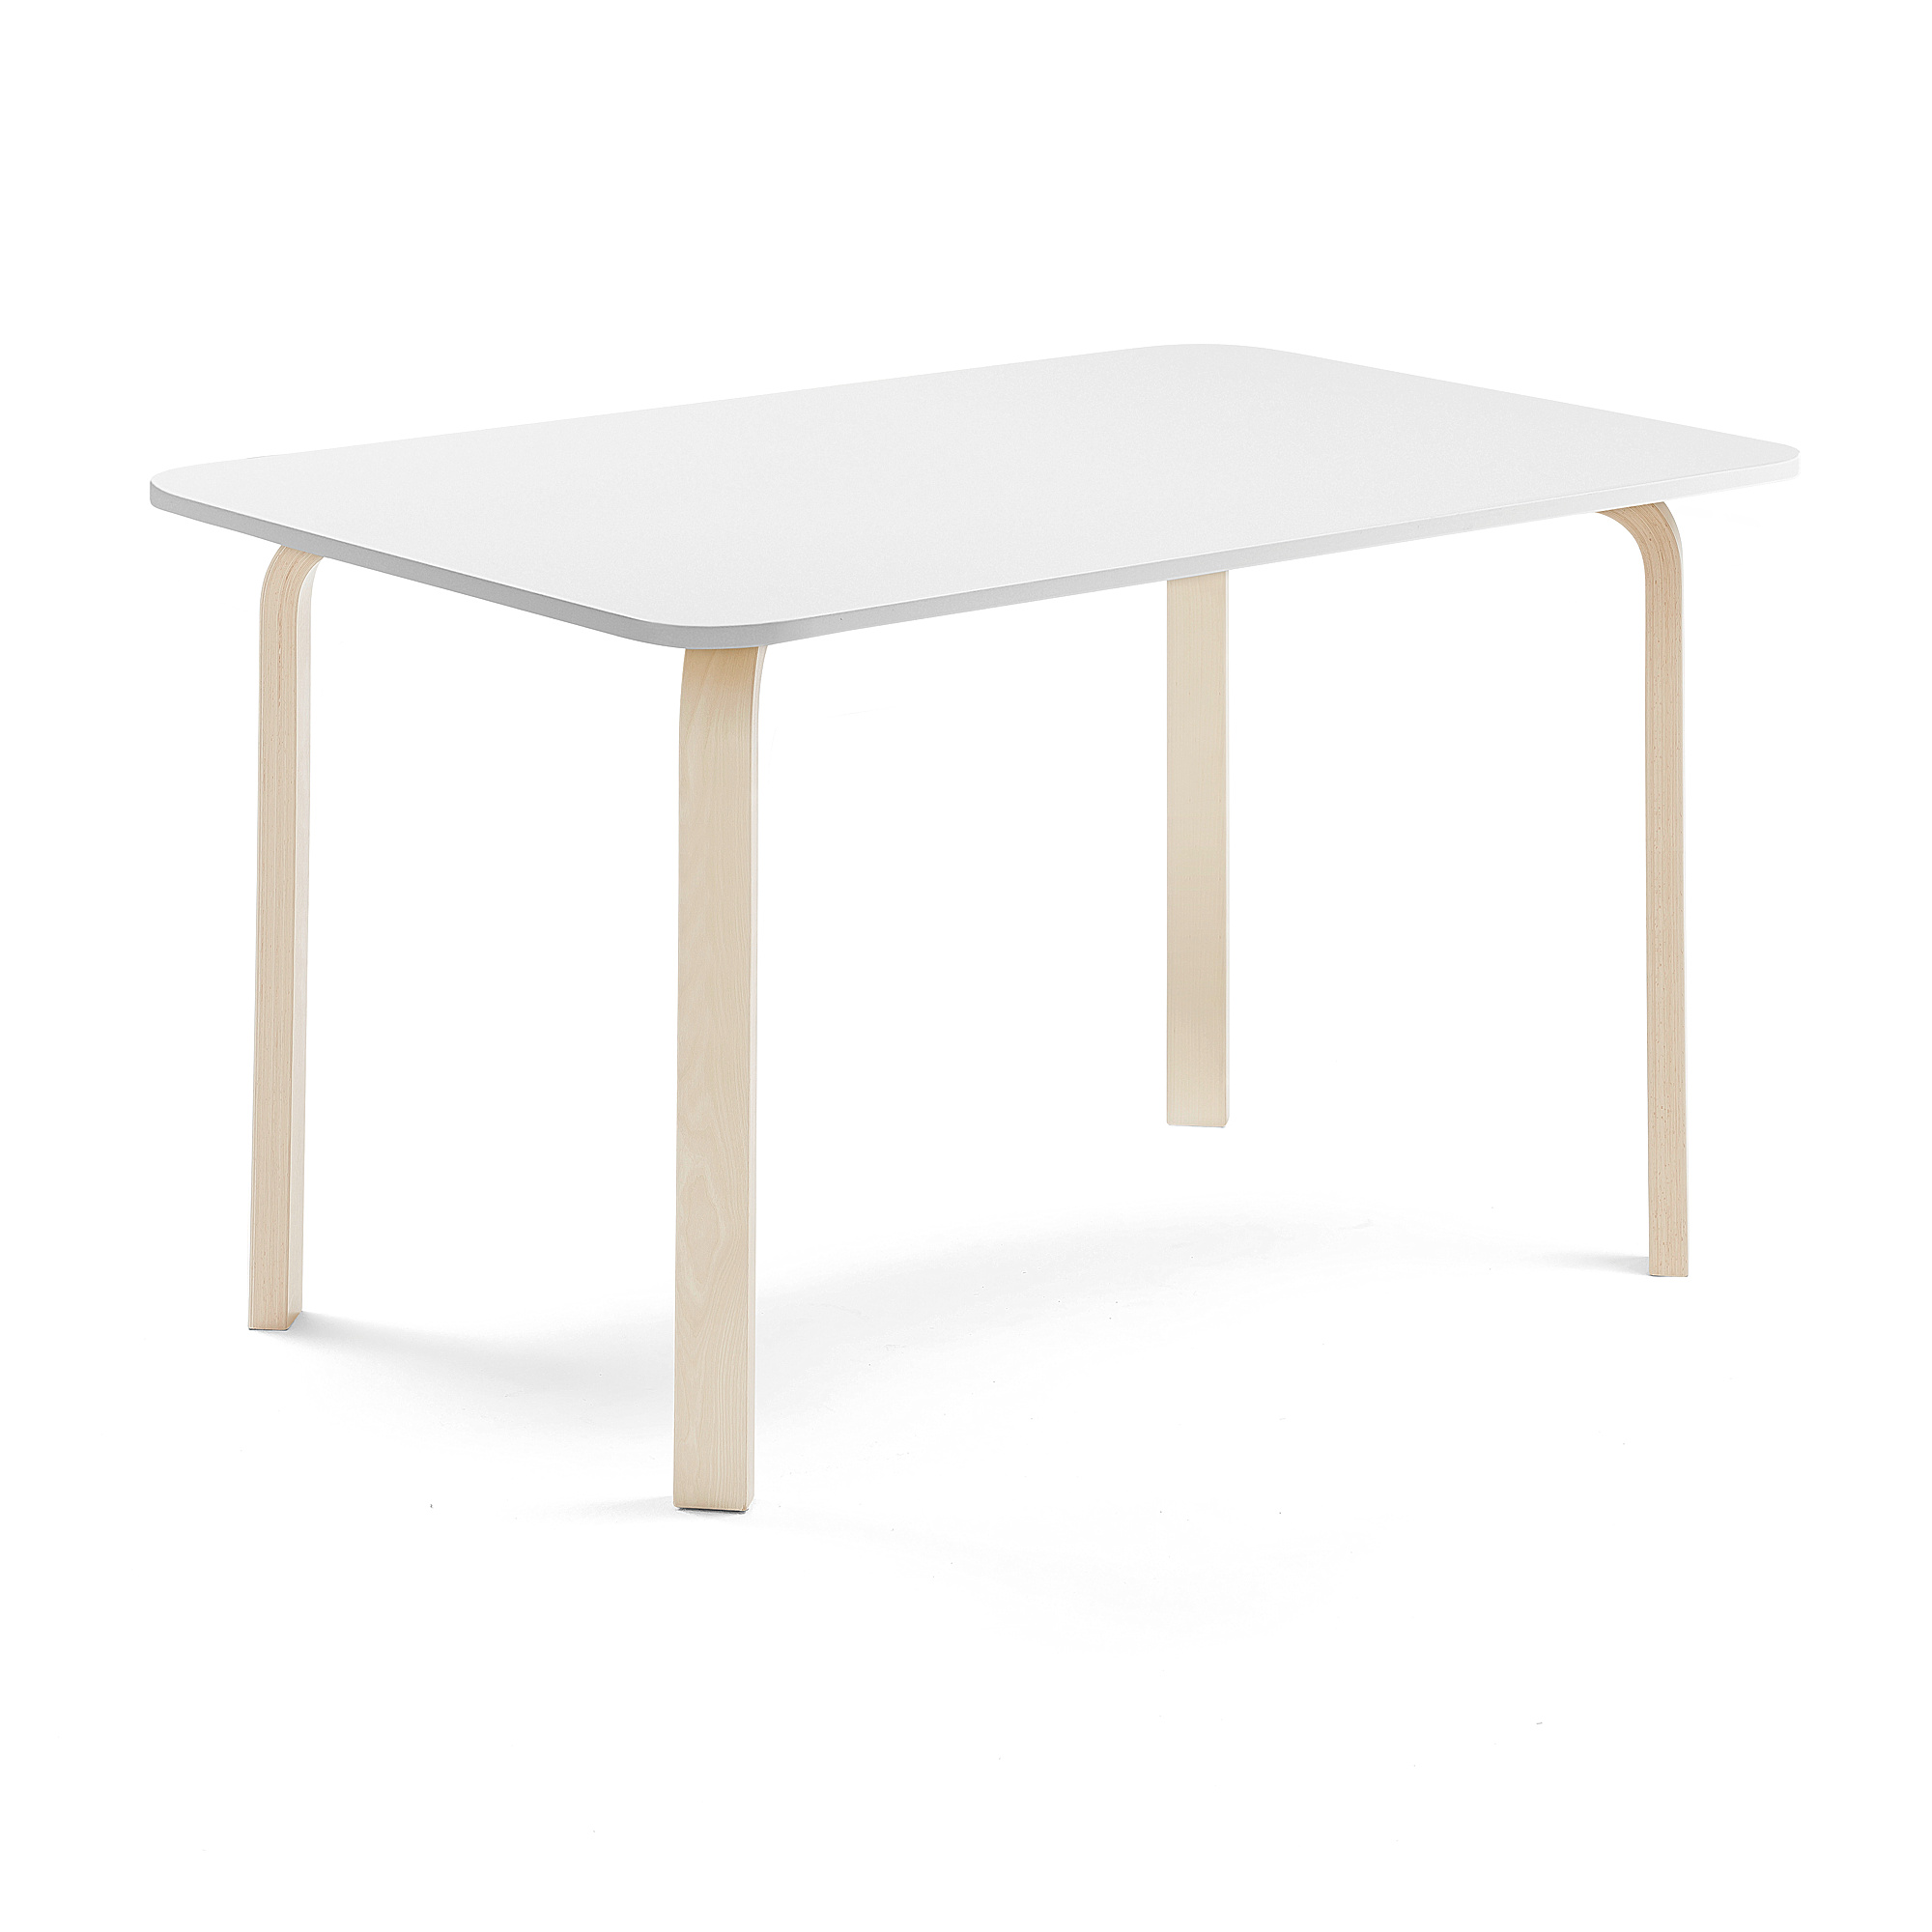 Stůl ELTON, 1400x800x710 mm, bříza, akustická HPL deska, bílá